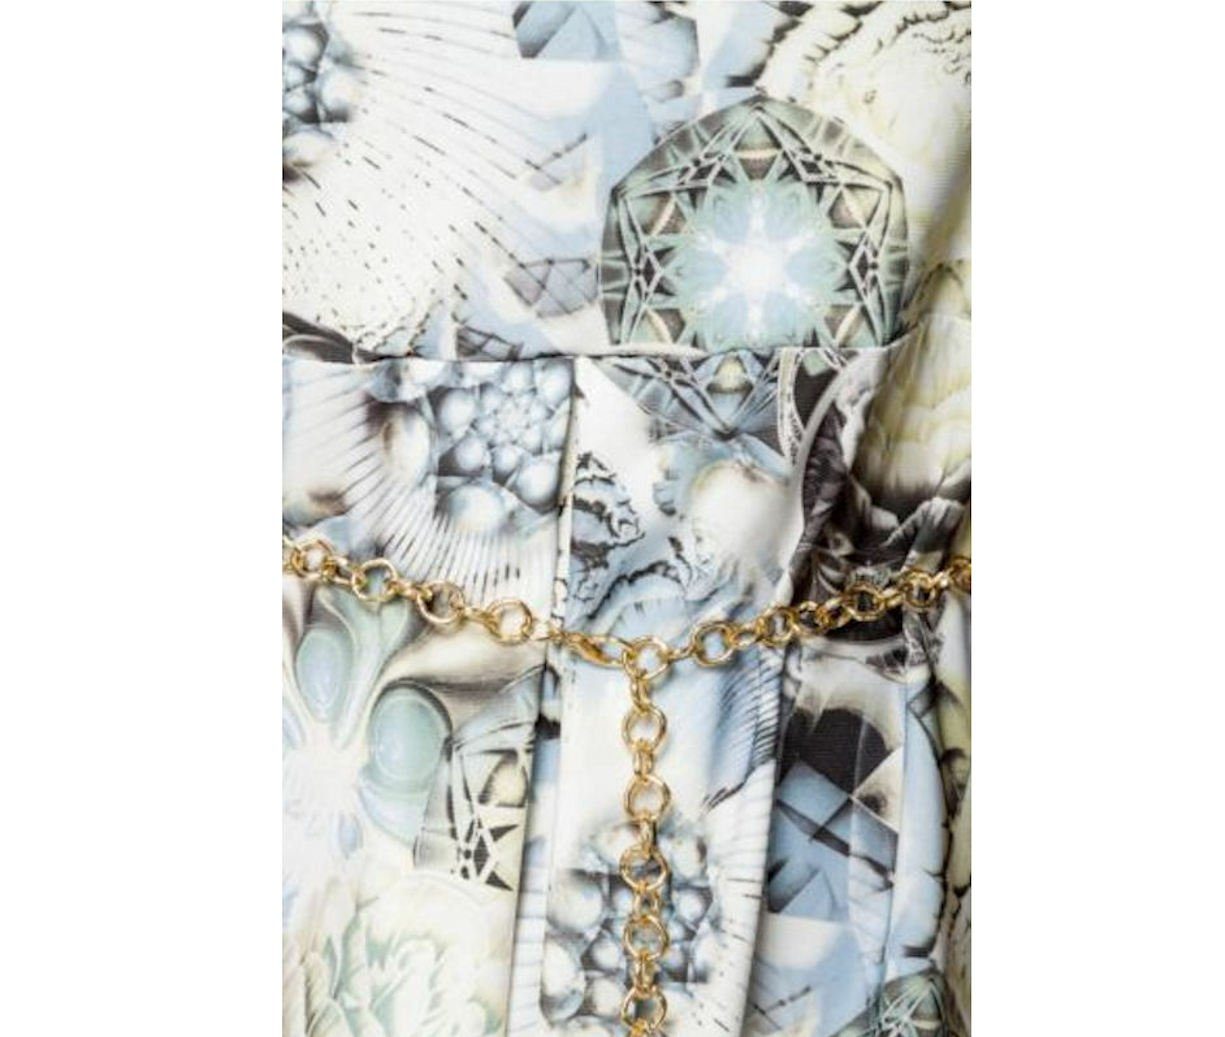 Sommerkleid mit Sommerkleid Gürtelkette luftiges Minikleid weiß/blau/gemustert